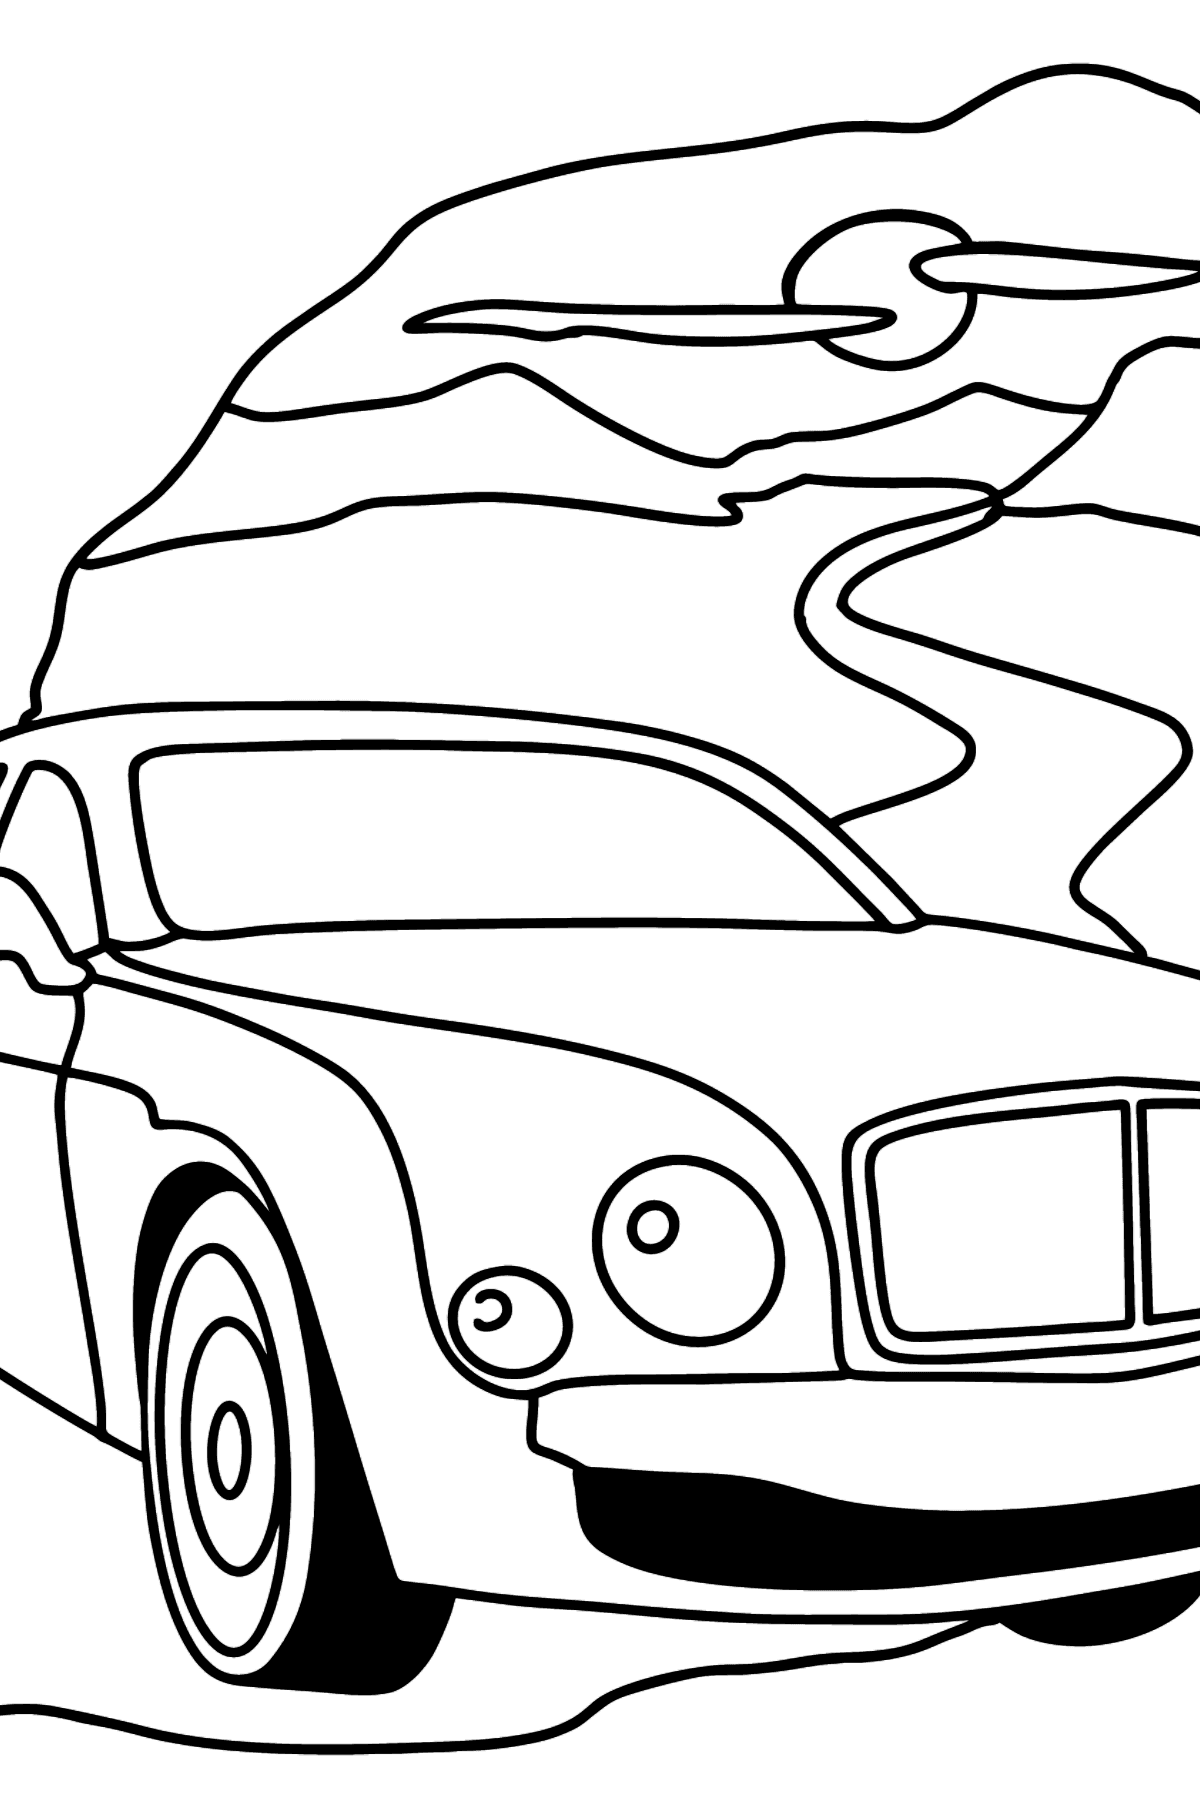 Desenhos para colorir do carro Bentley Mulsanne - Imagens para Colorir para Crianças